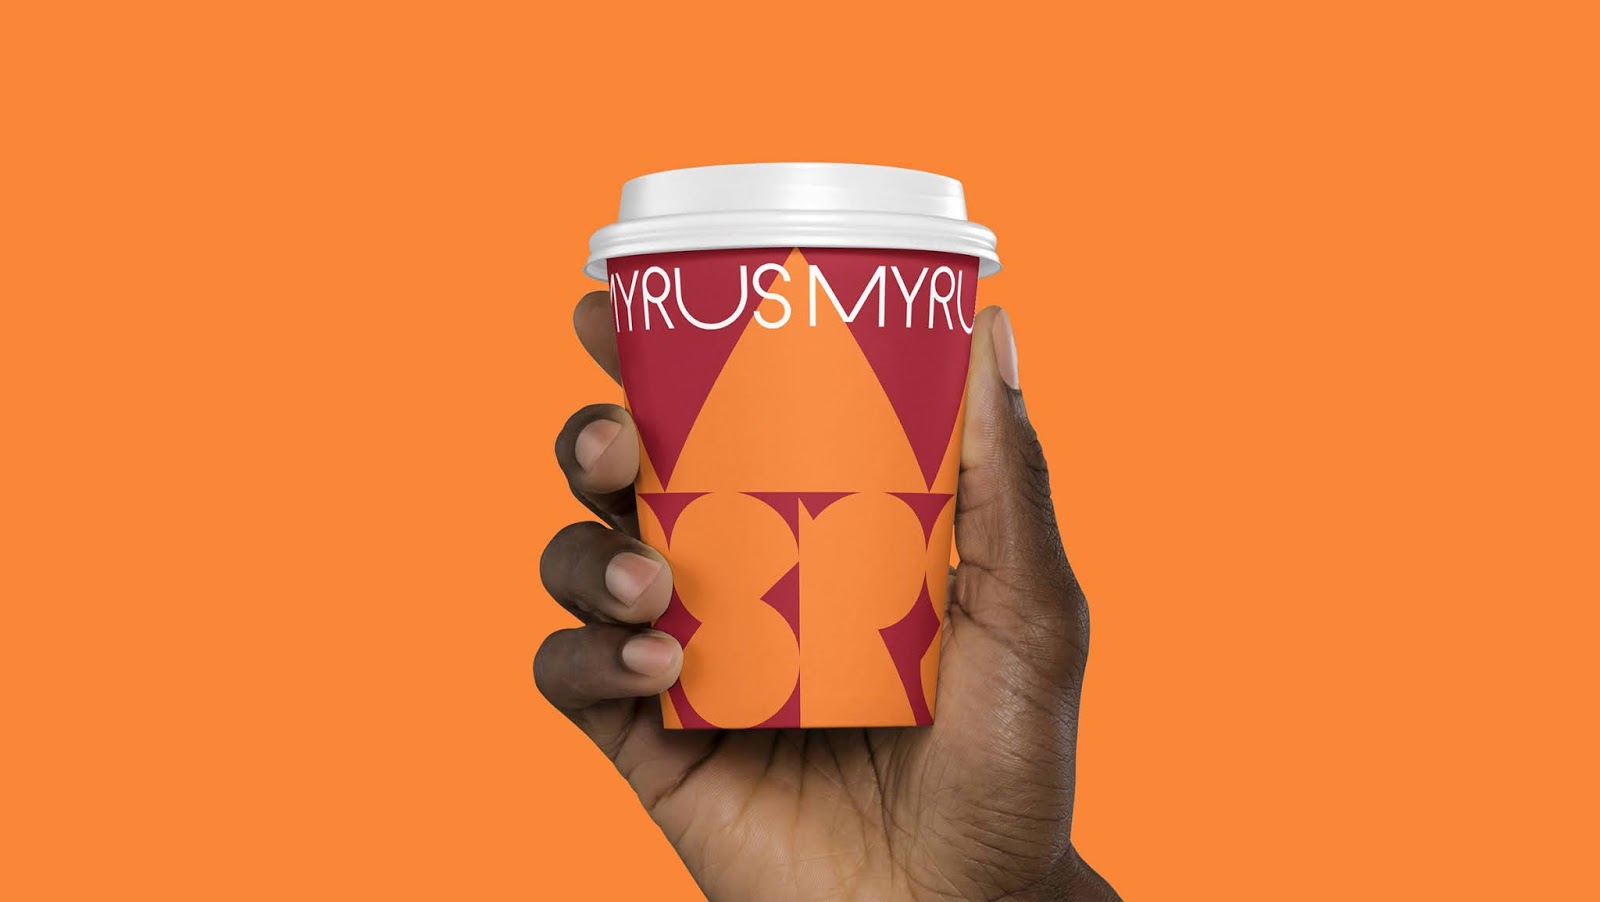 MYRUS咖啡概念包装设计